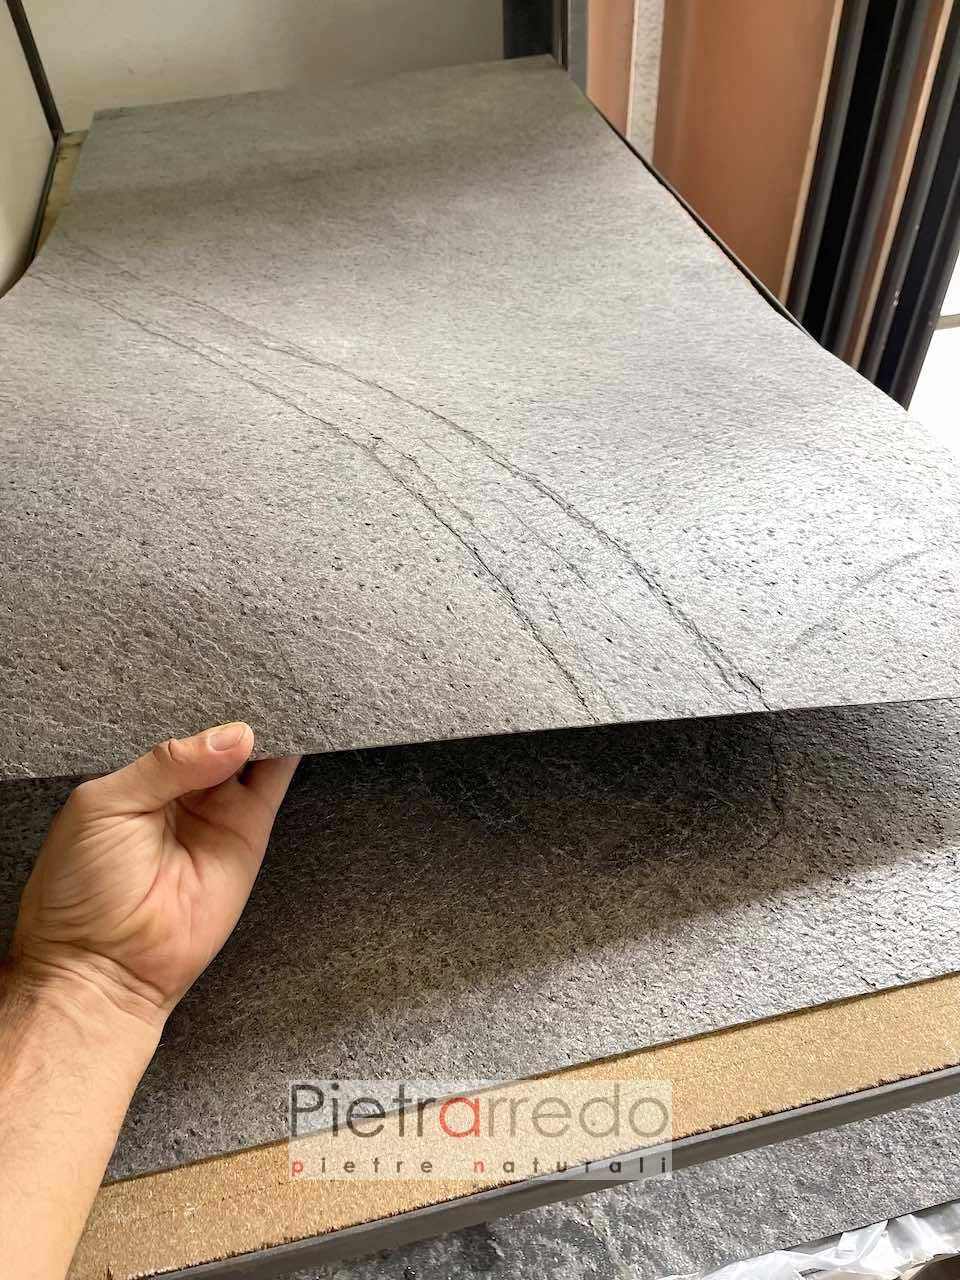 fogli flessibili in pietra silver grigia per impiallacciatura mobili laminati pietrarredo costo sasso sottile